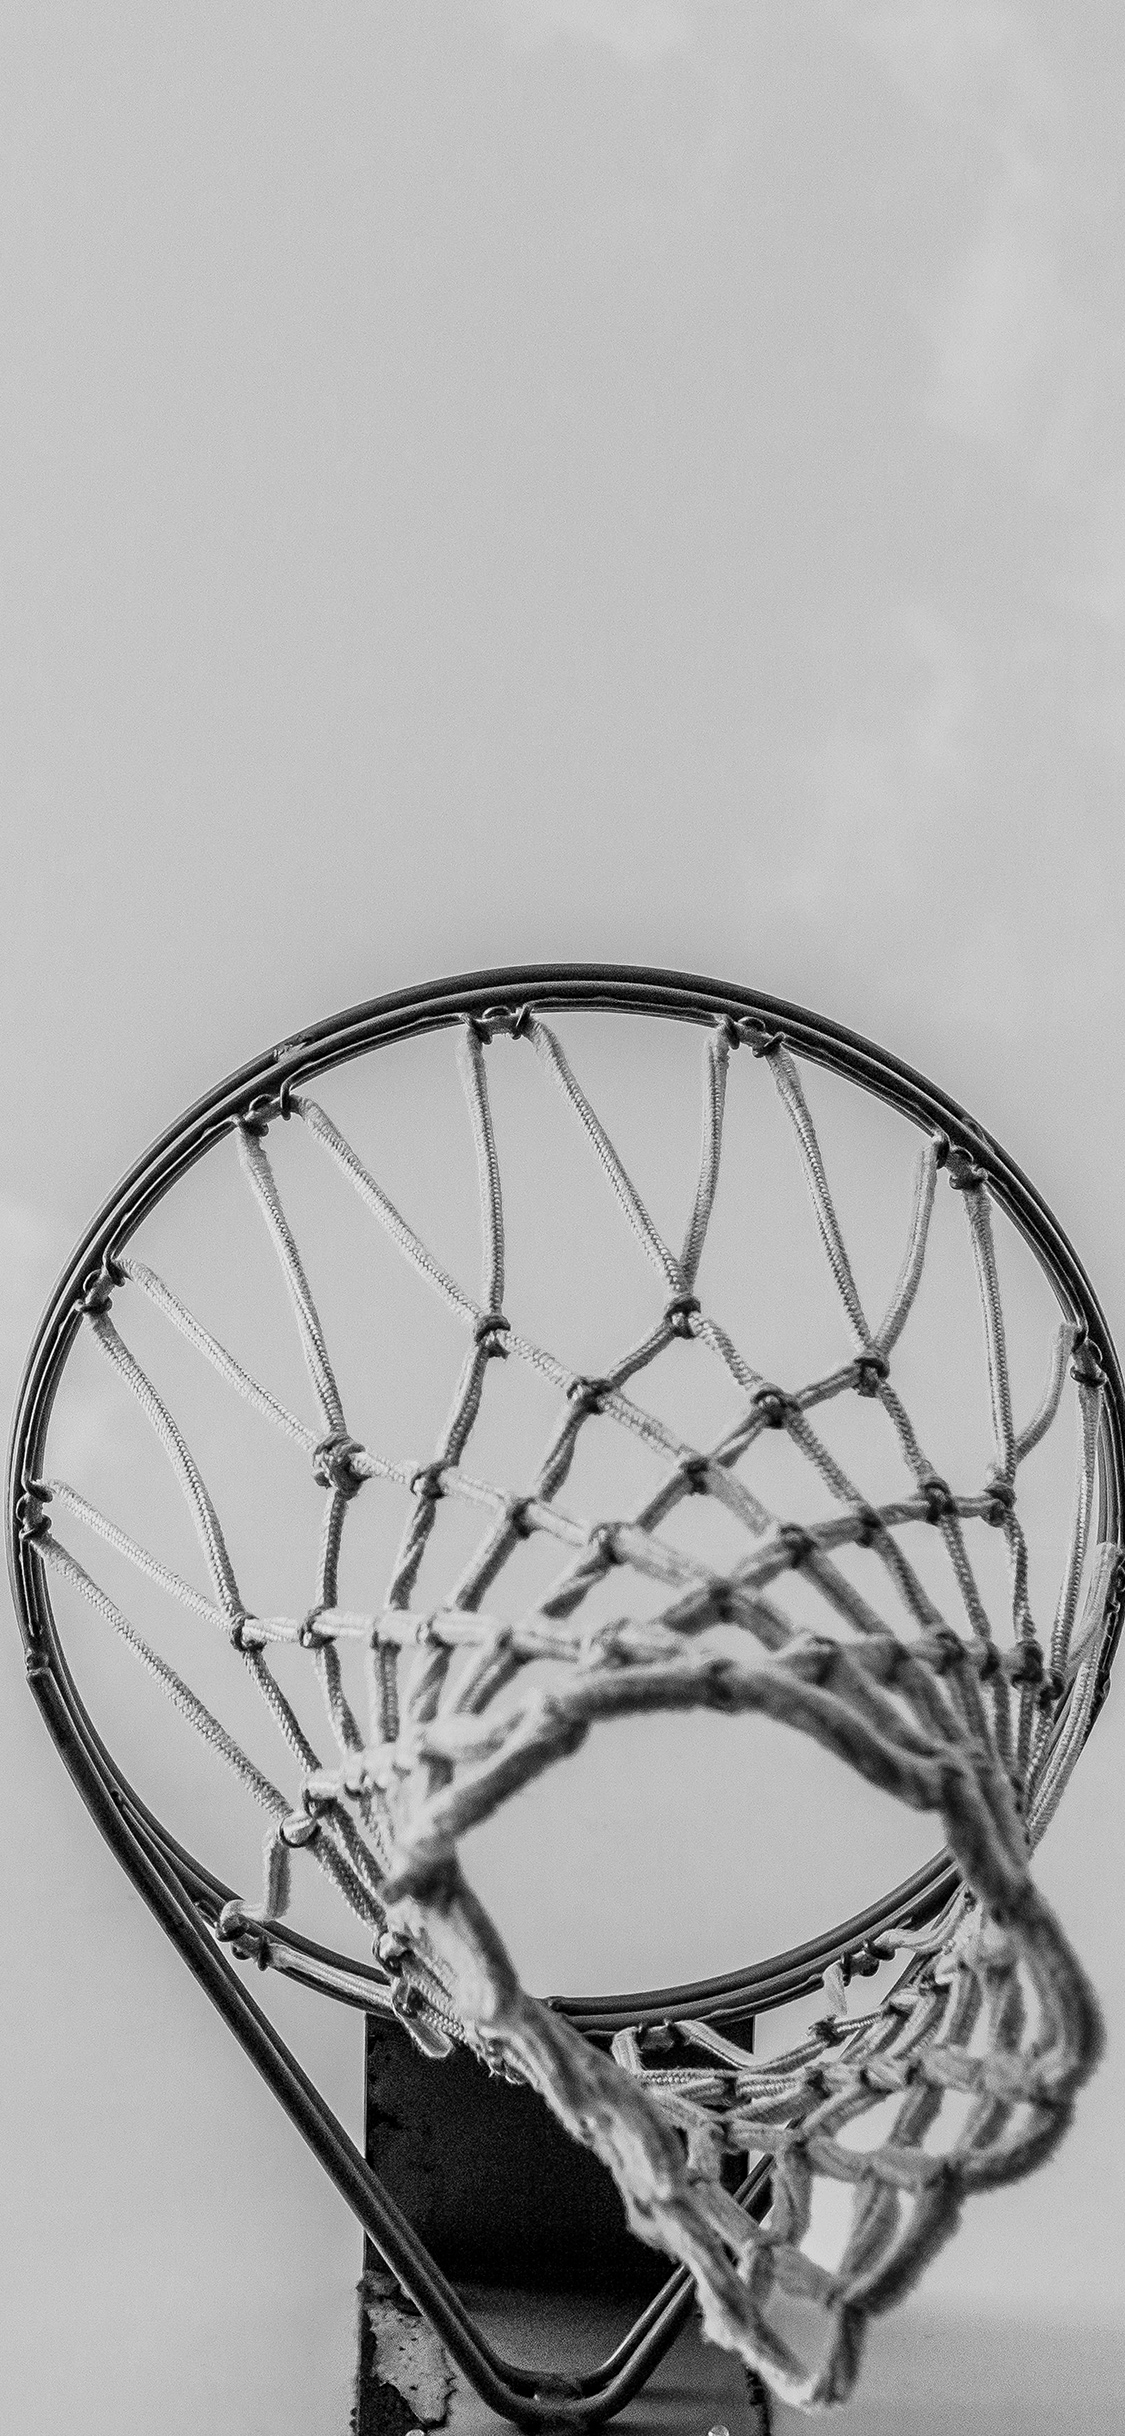 Iphone X Wallpaper Basketball - HD Wallpaper 